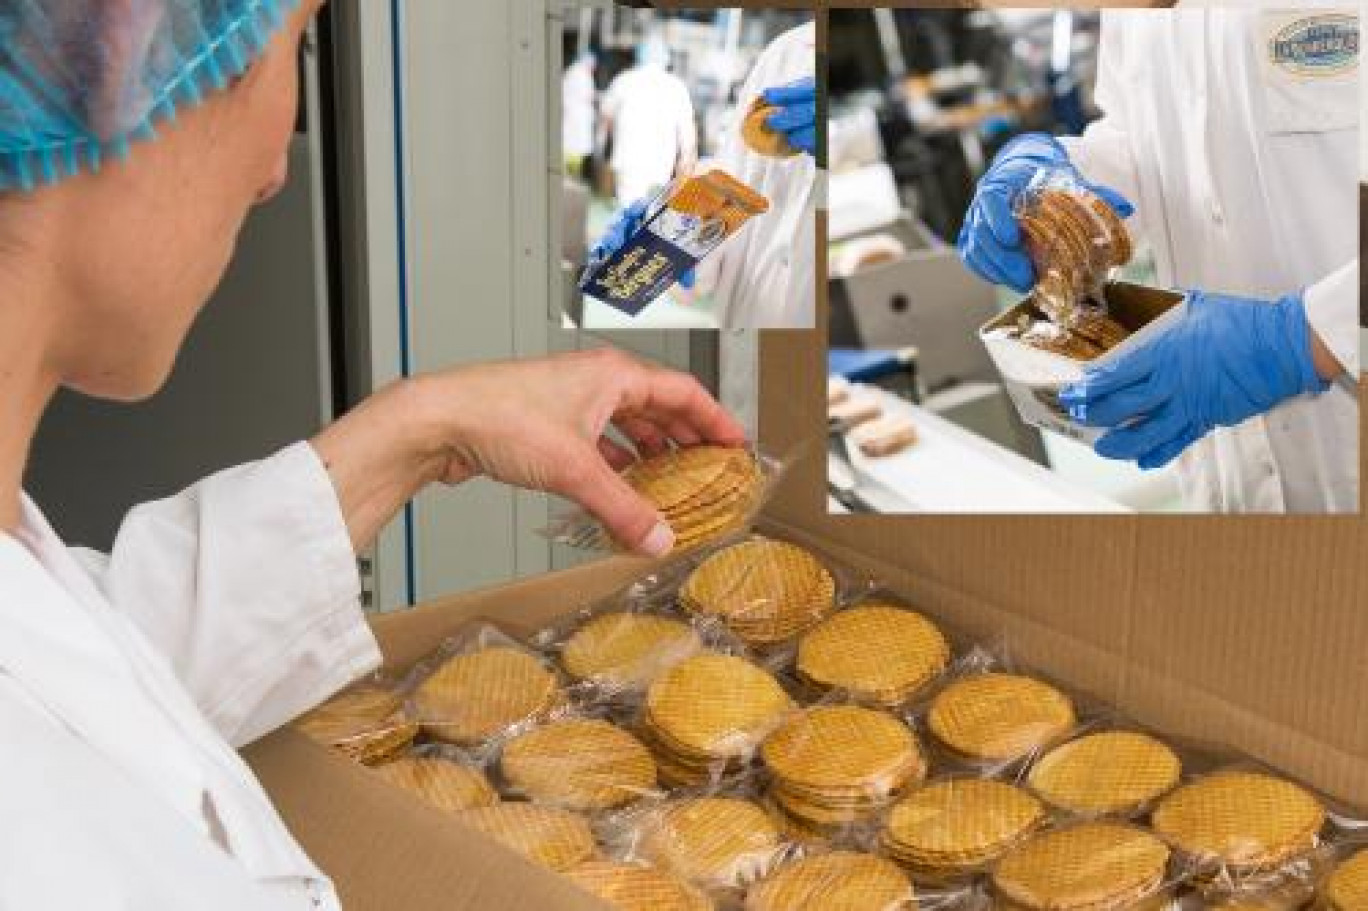 Le personnel est mixte : 50% d’hommes à la pâtisserie, 50% de femmes, plutôt à l’emballage.